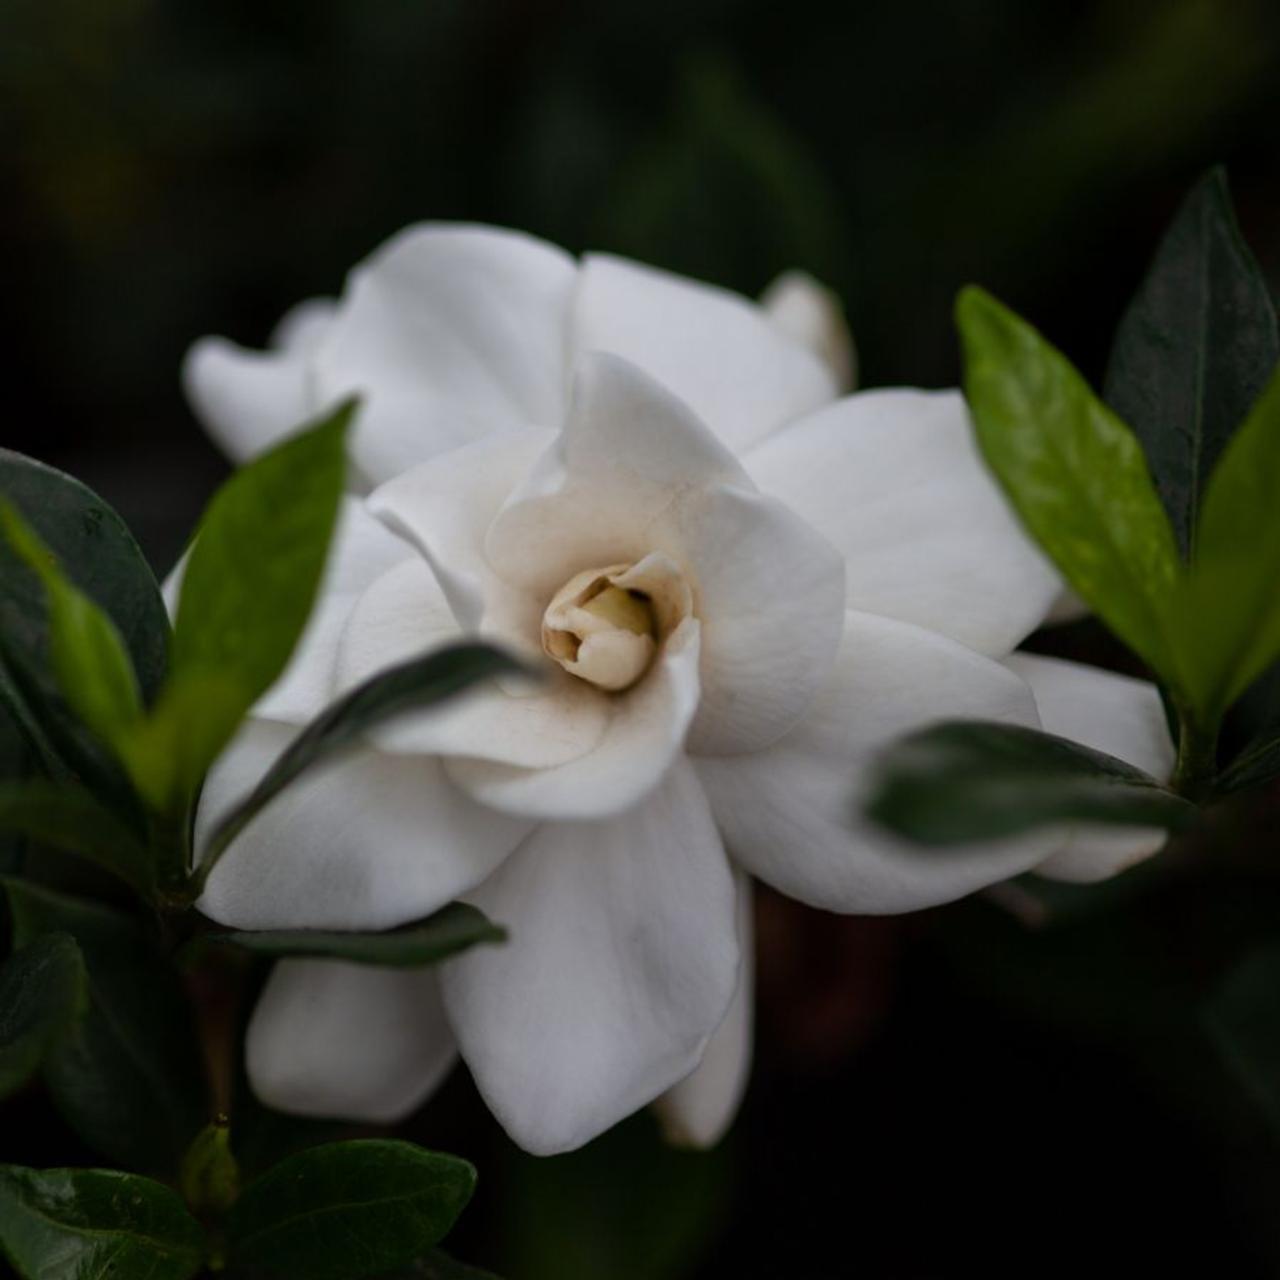 gardenia jasminoides 'double mint' - kaufen sie pflanzen bei